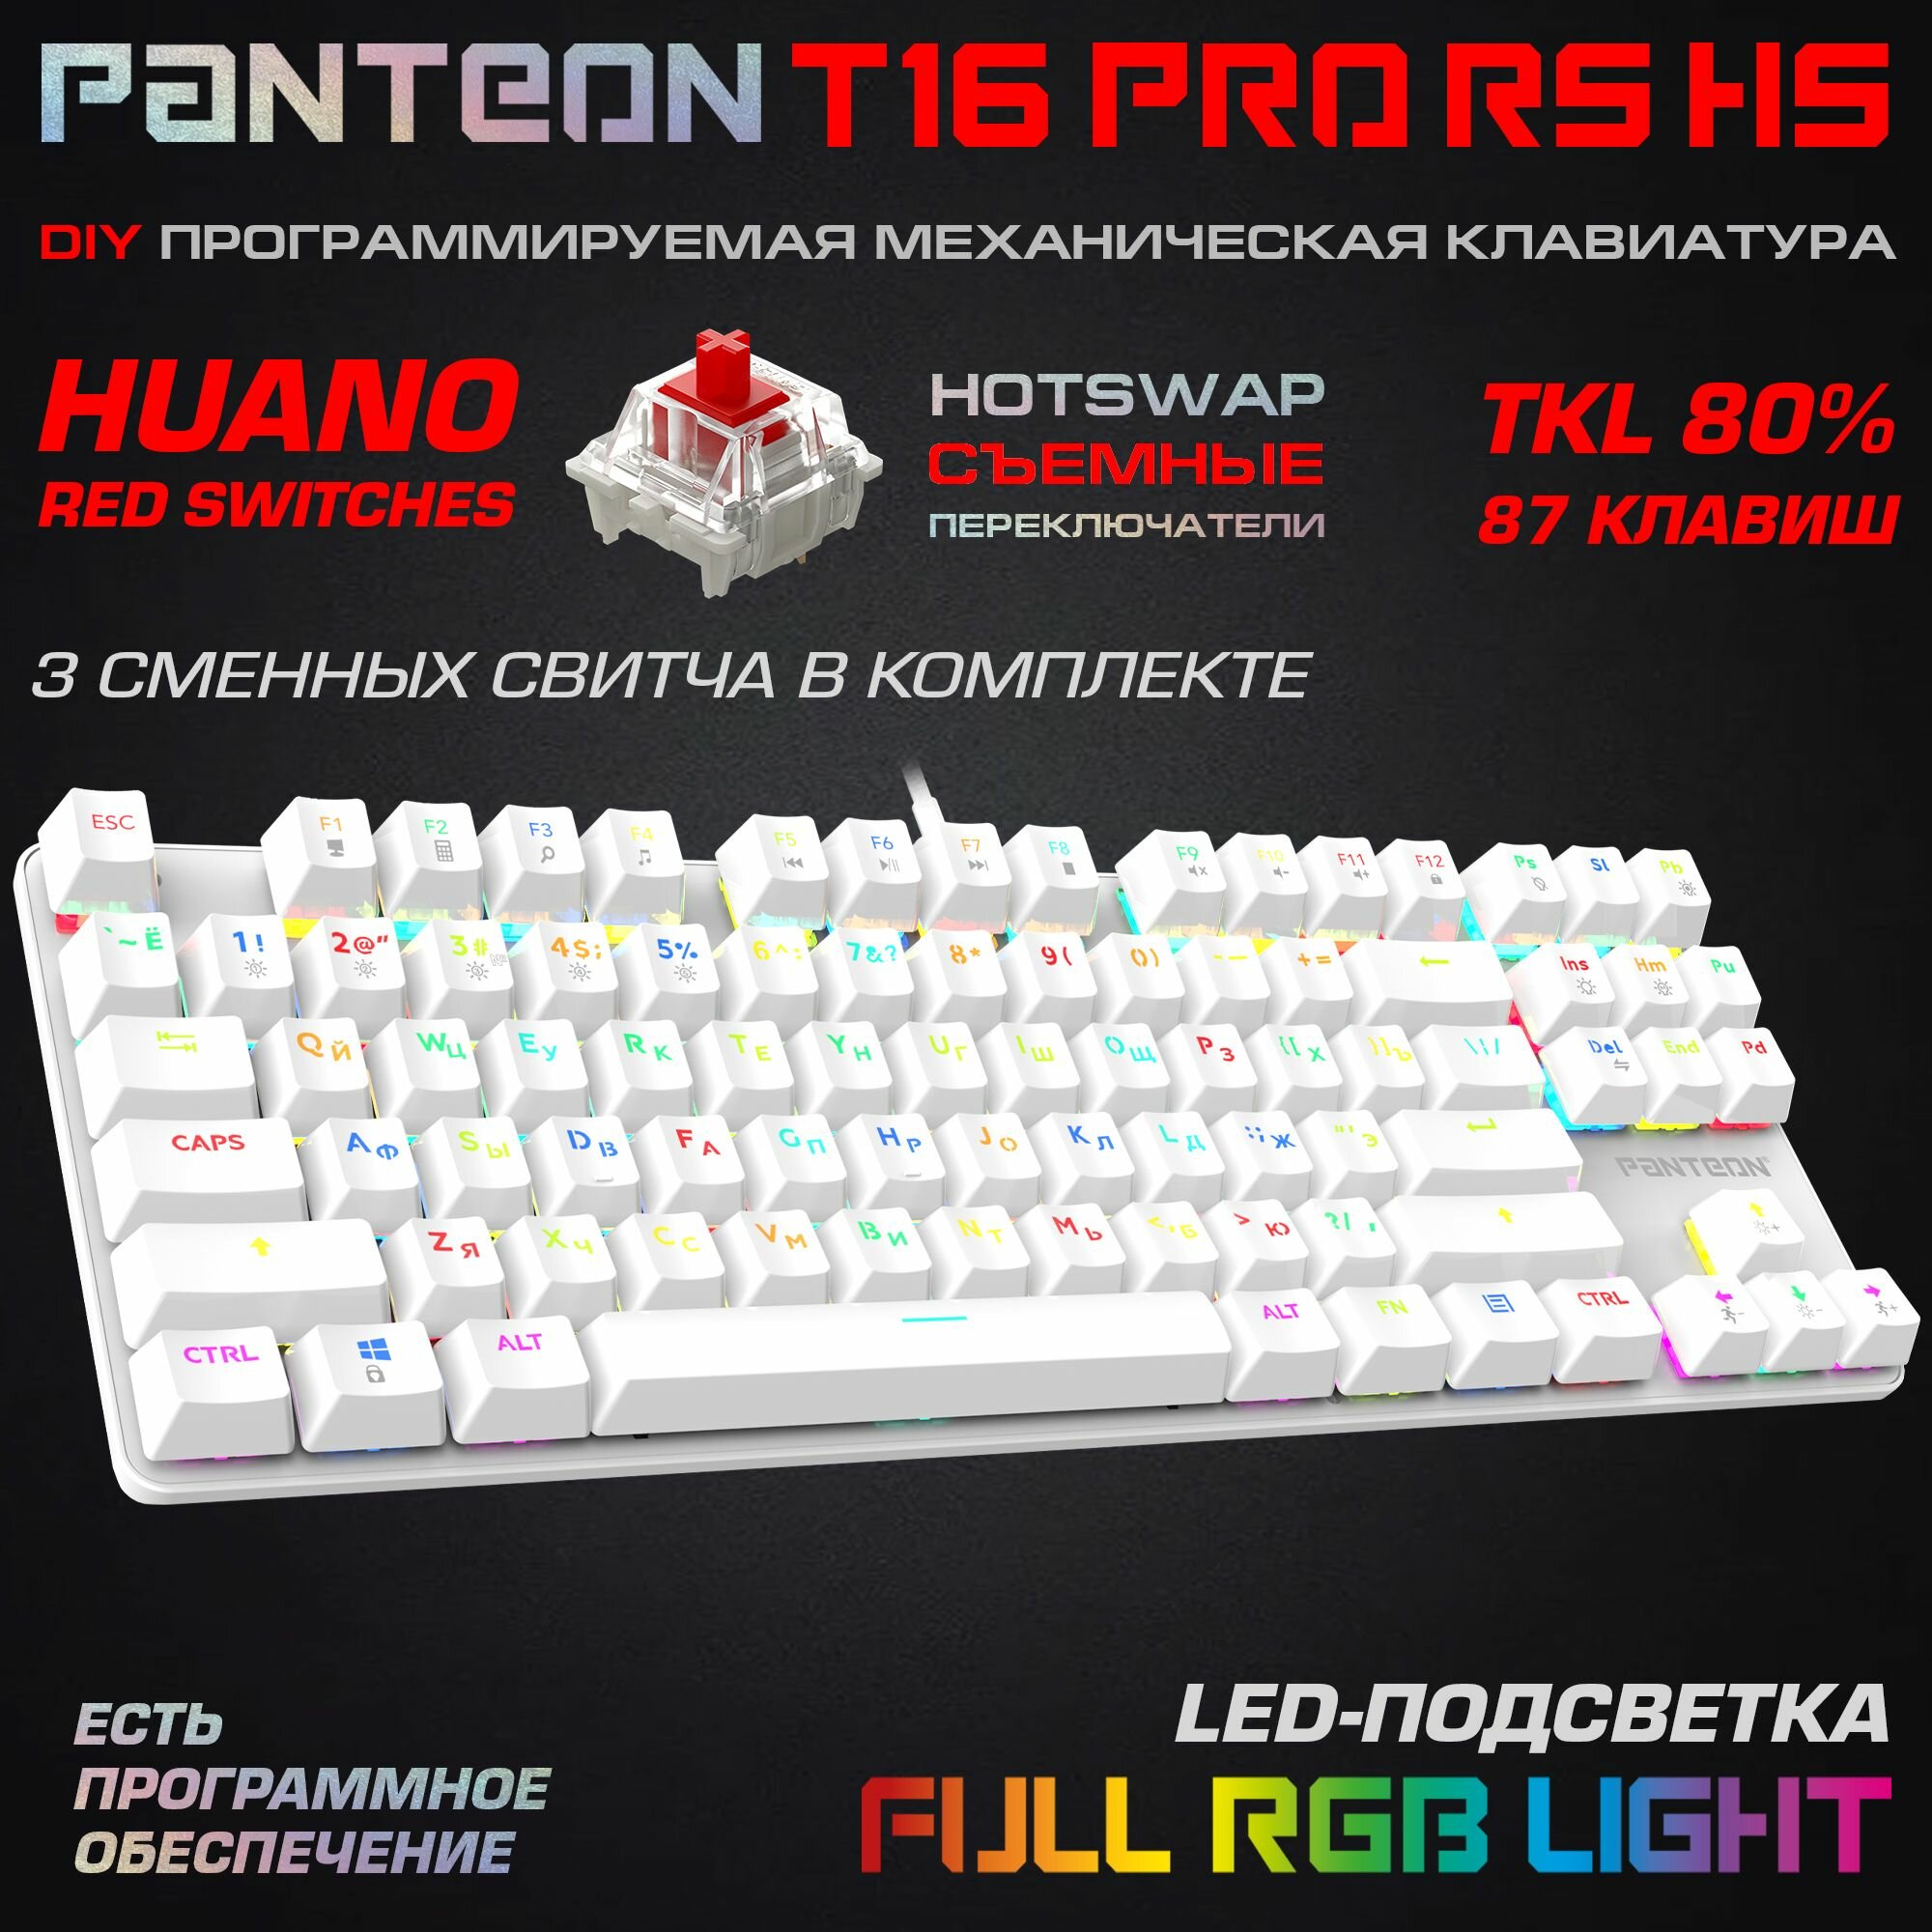 Механическая игровая клавиатура С led-подсветкой RAINBOW PANTEON T16 RS HS Black